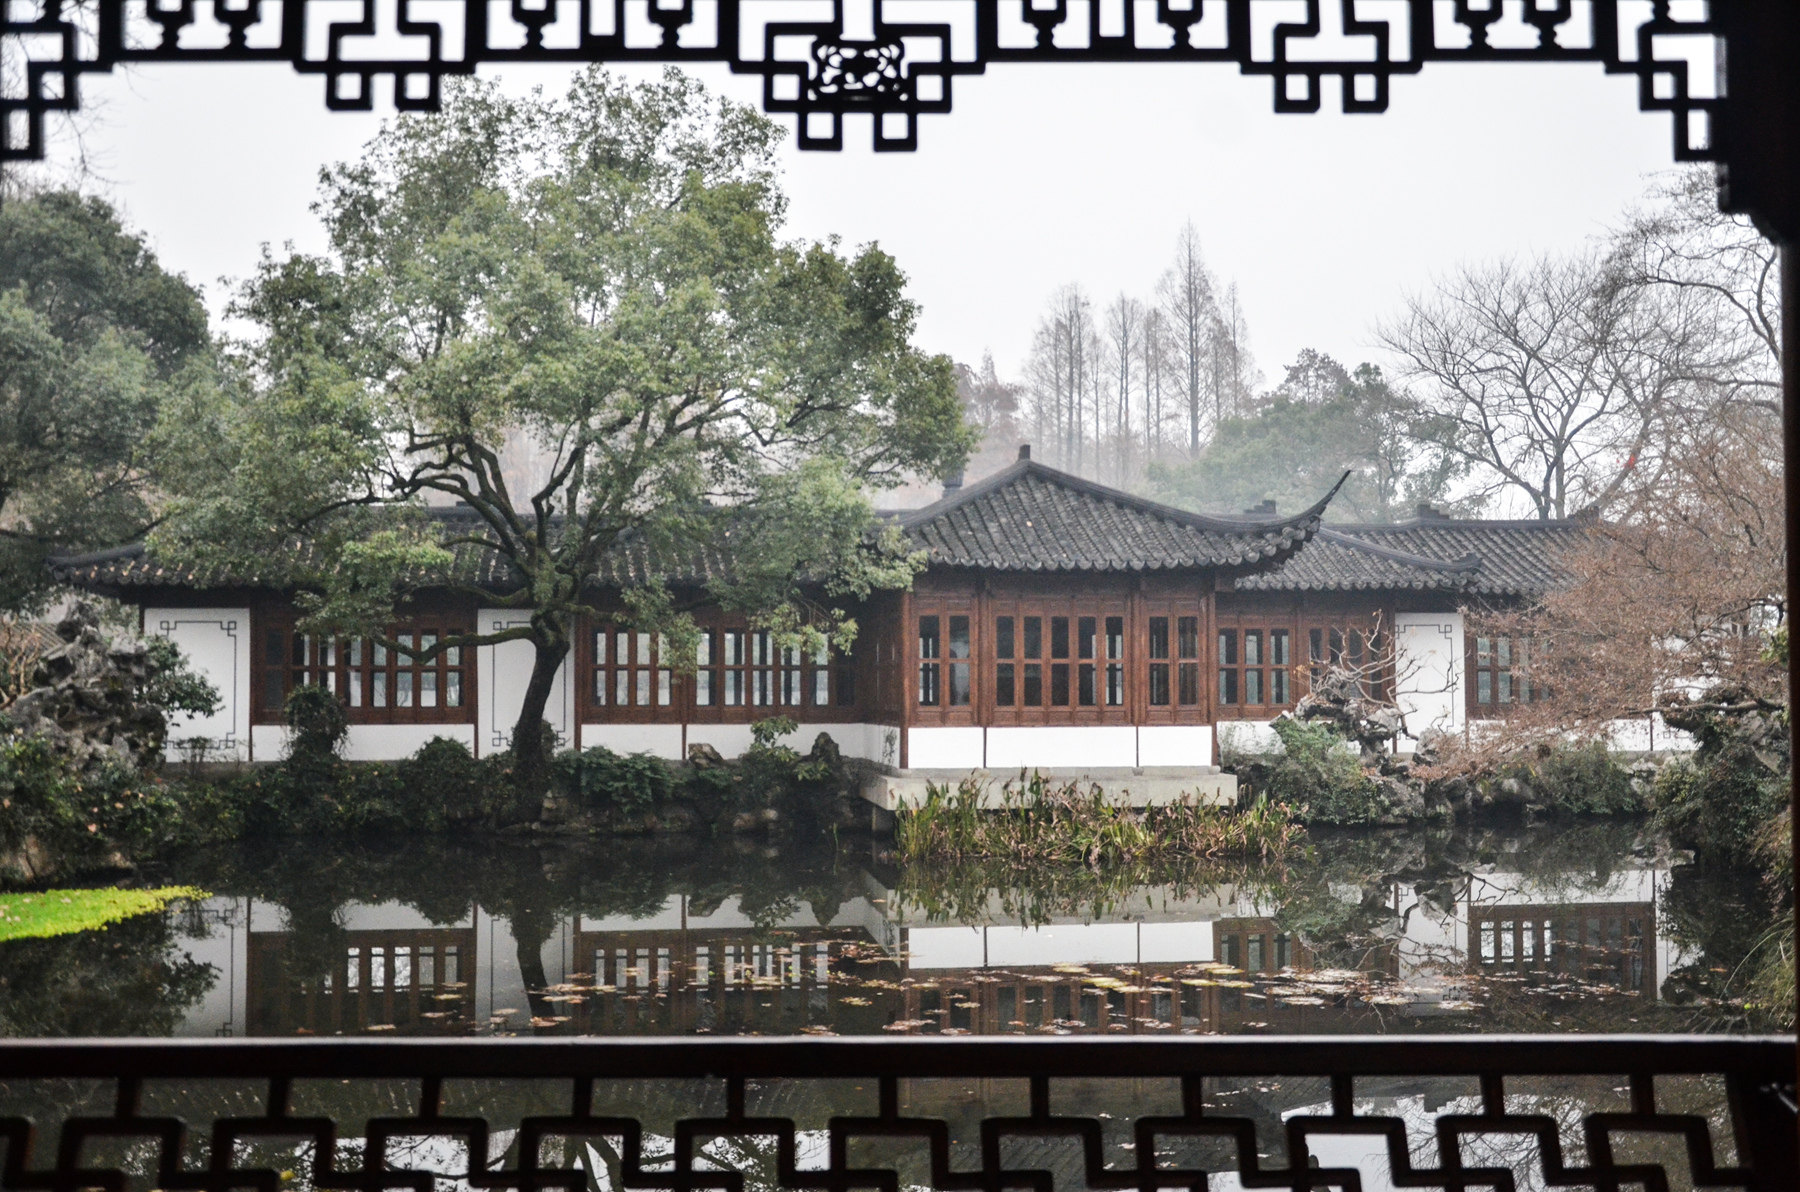 【携程攻略】杭州郭庄景点,郭庄，是杭州西湖之上一座最具有江南园林建筑艺术特色的私家花园。从…